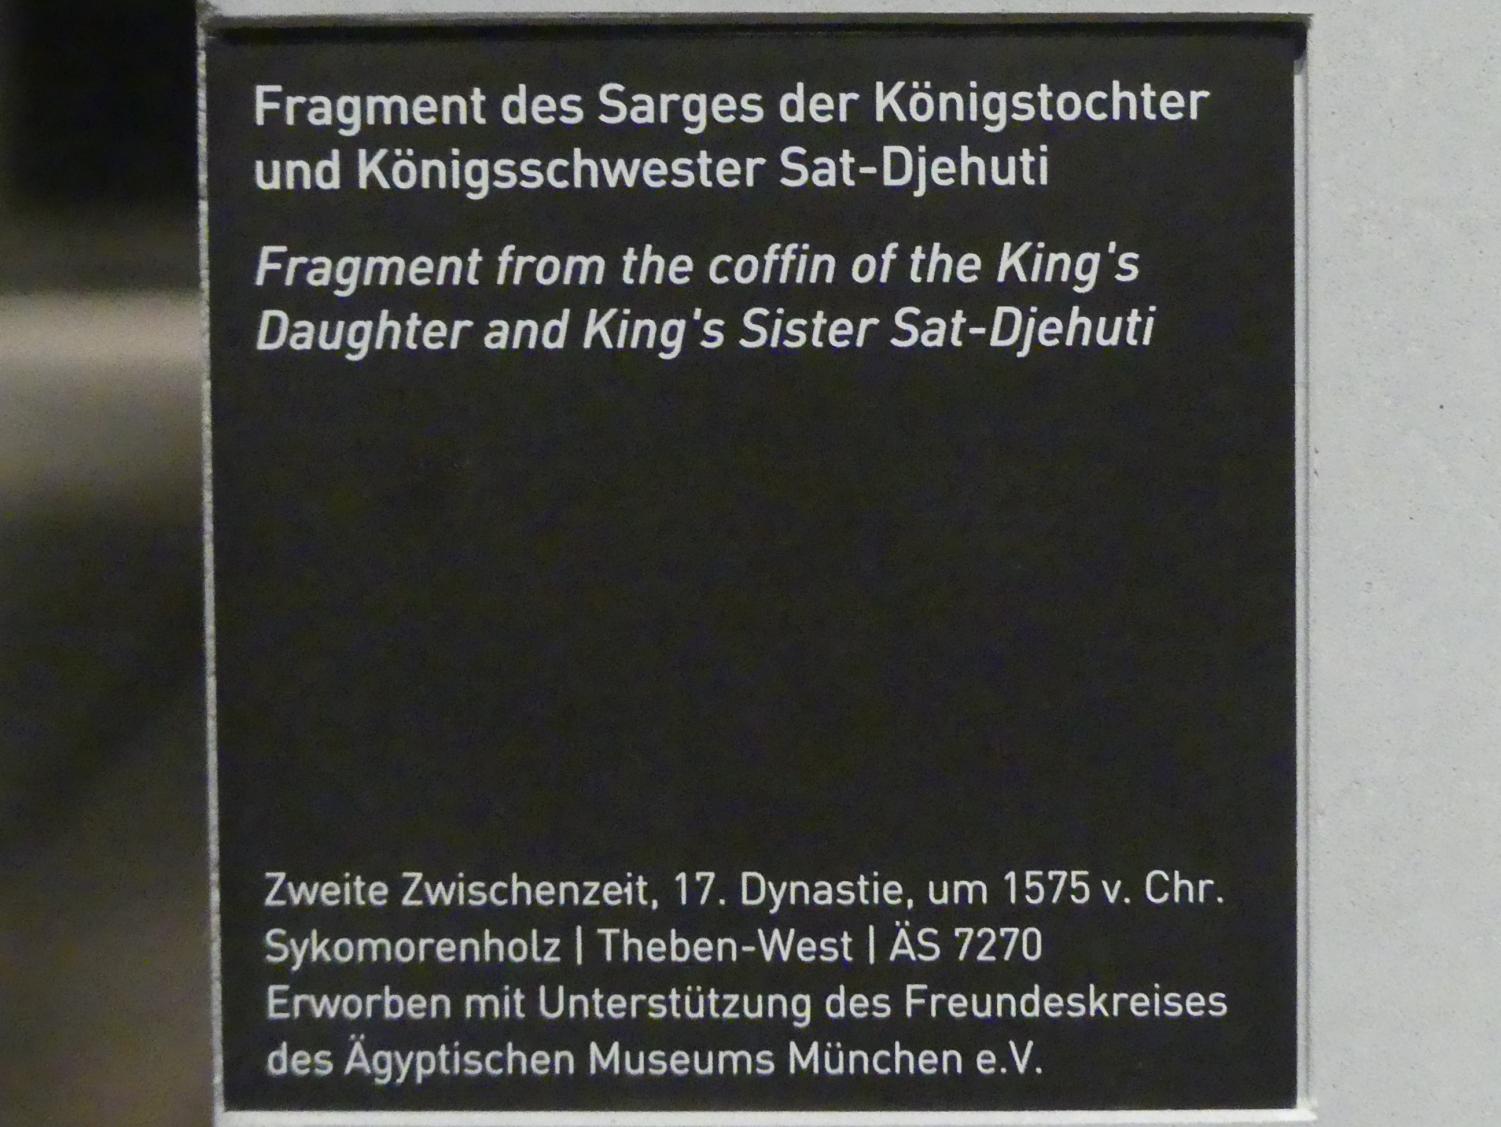 Fragment des Sarges der Königstochter und Königsschwester Sat-Djehuti, 17. Dynastie, 1345 - 1200 v. Chr., 1575 v. Chr., Bild 2/2